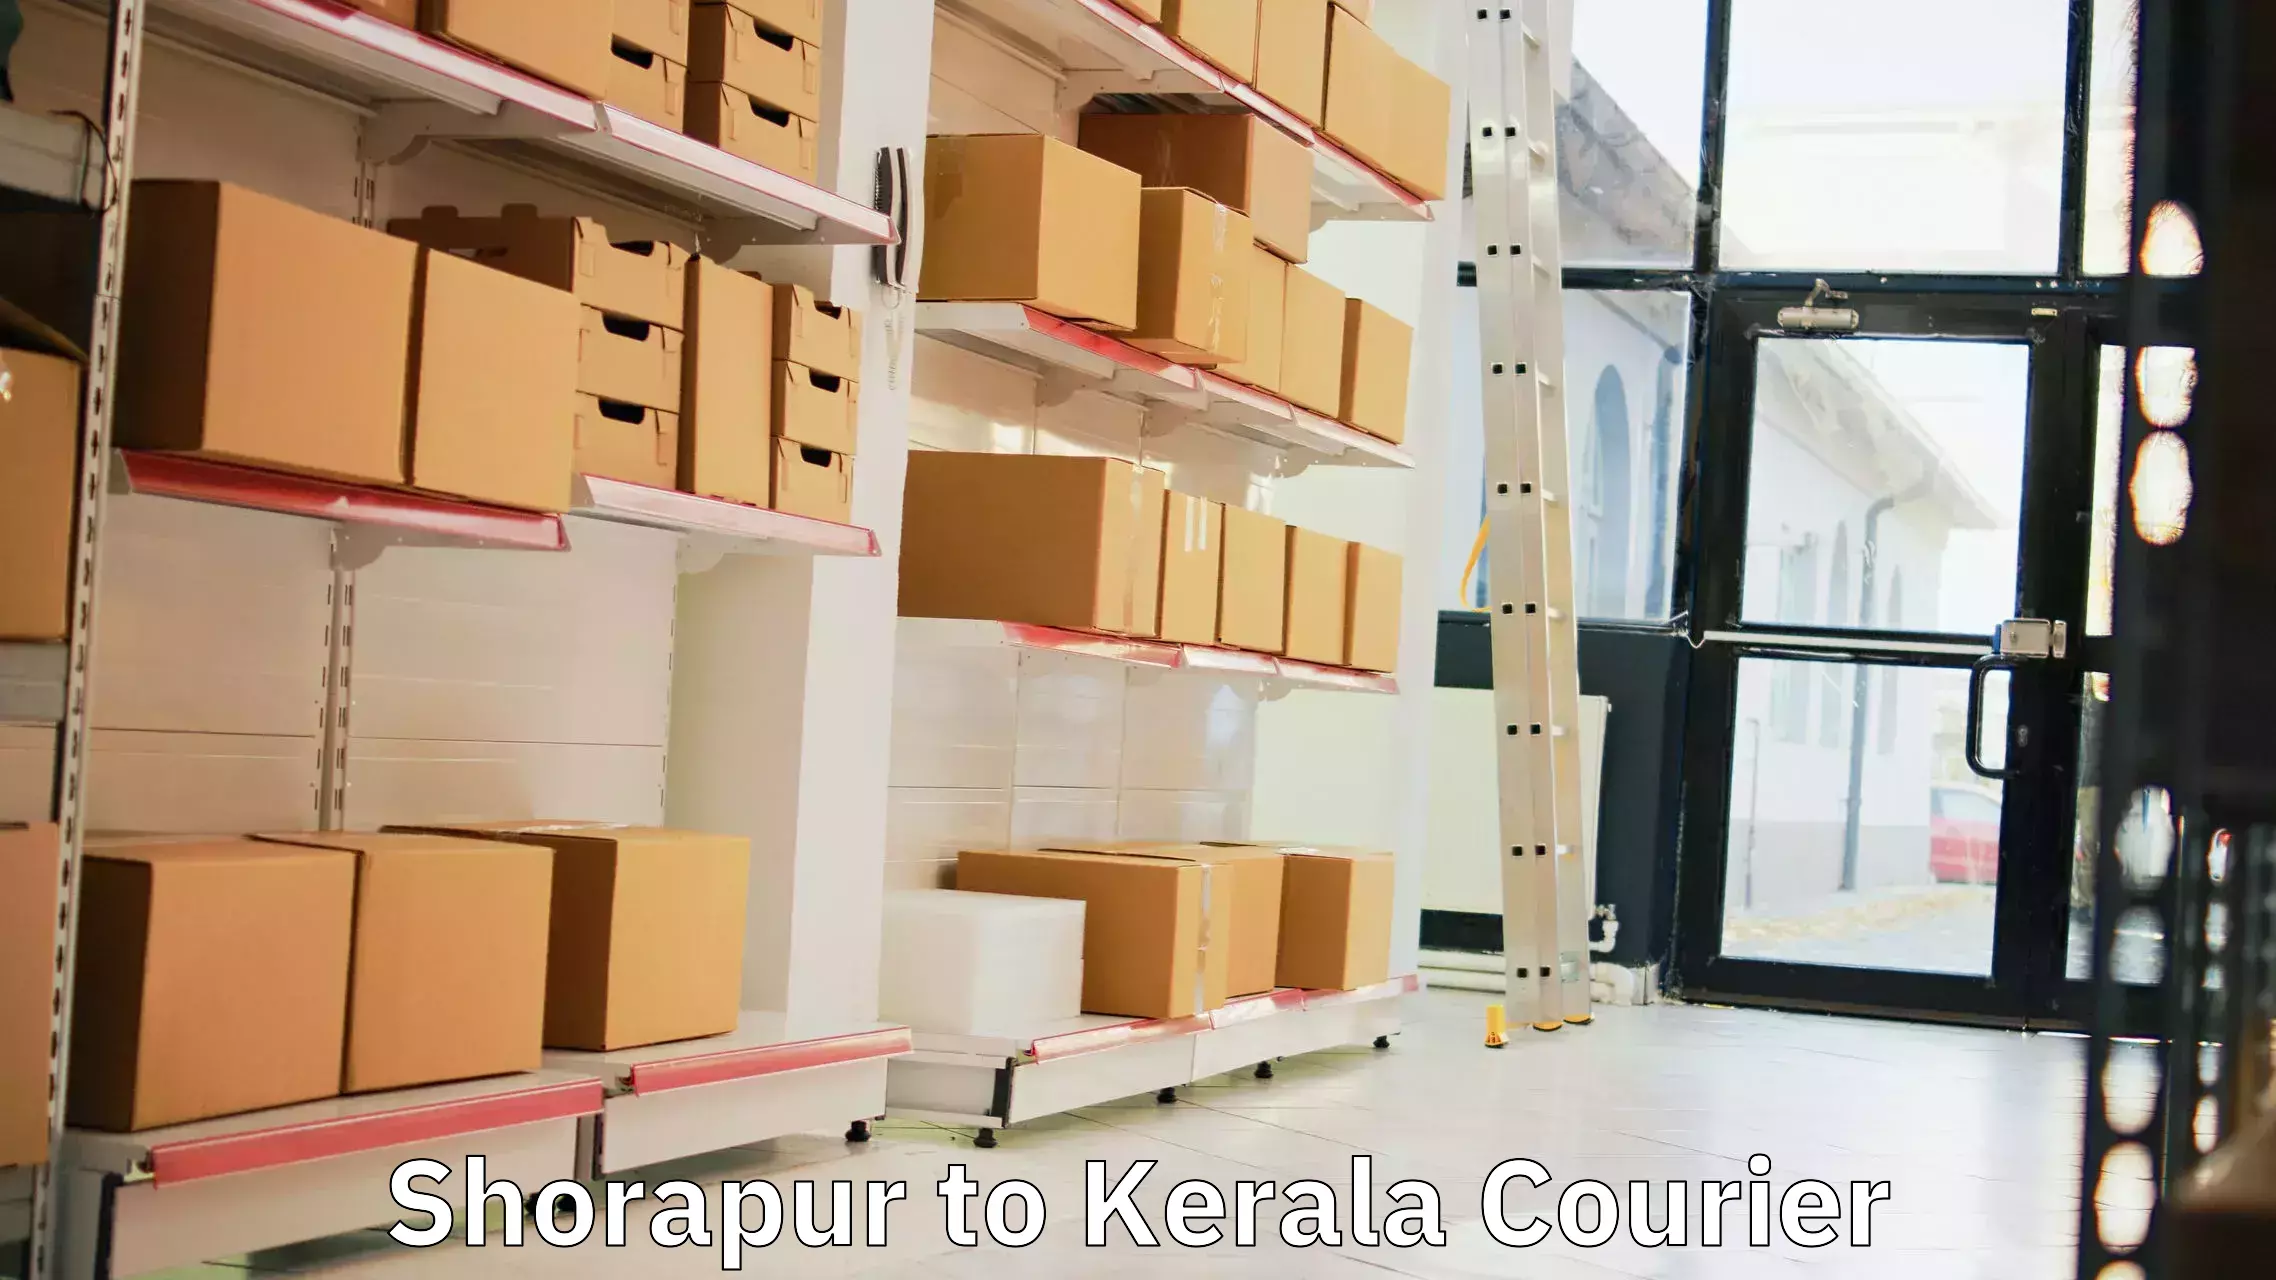 Efficient parcel service Shorapur to Venjaramoodu